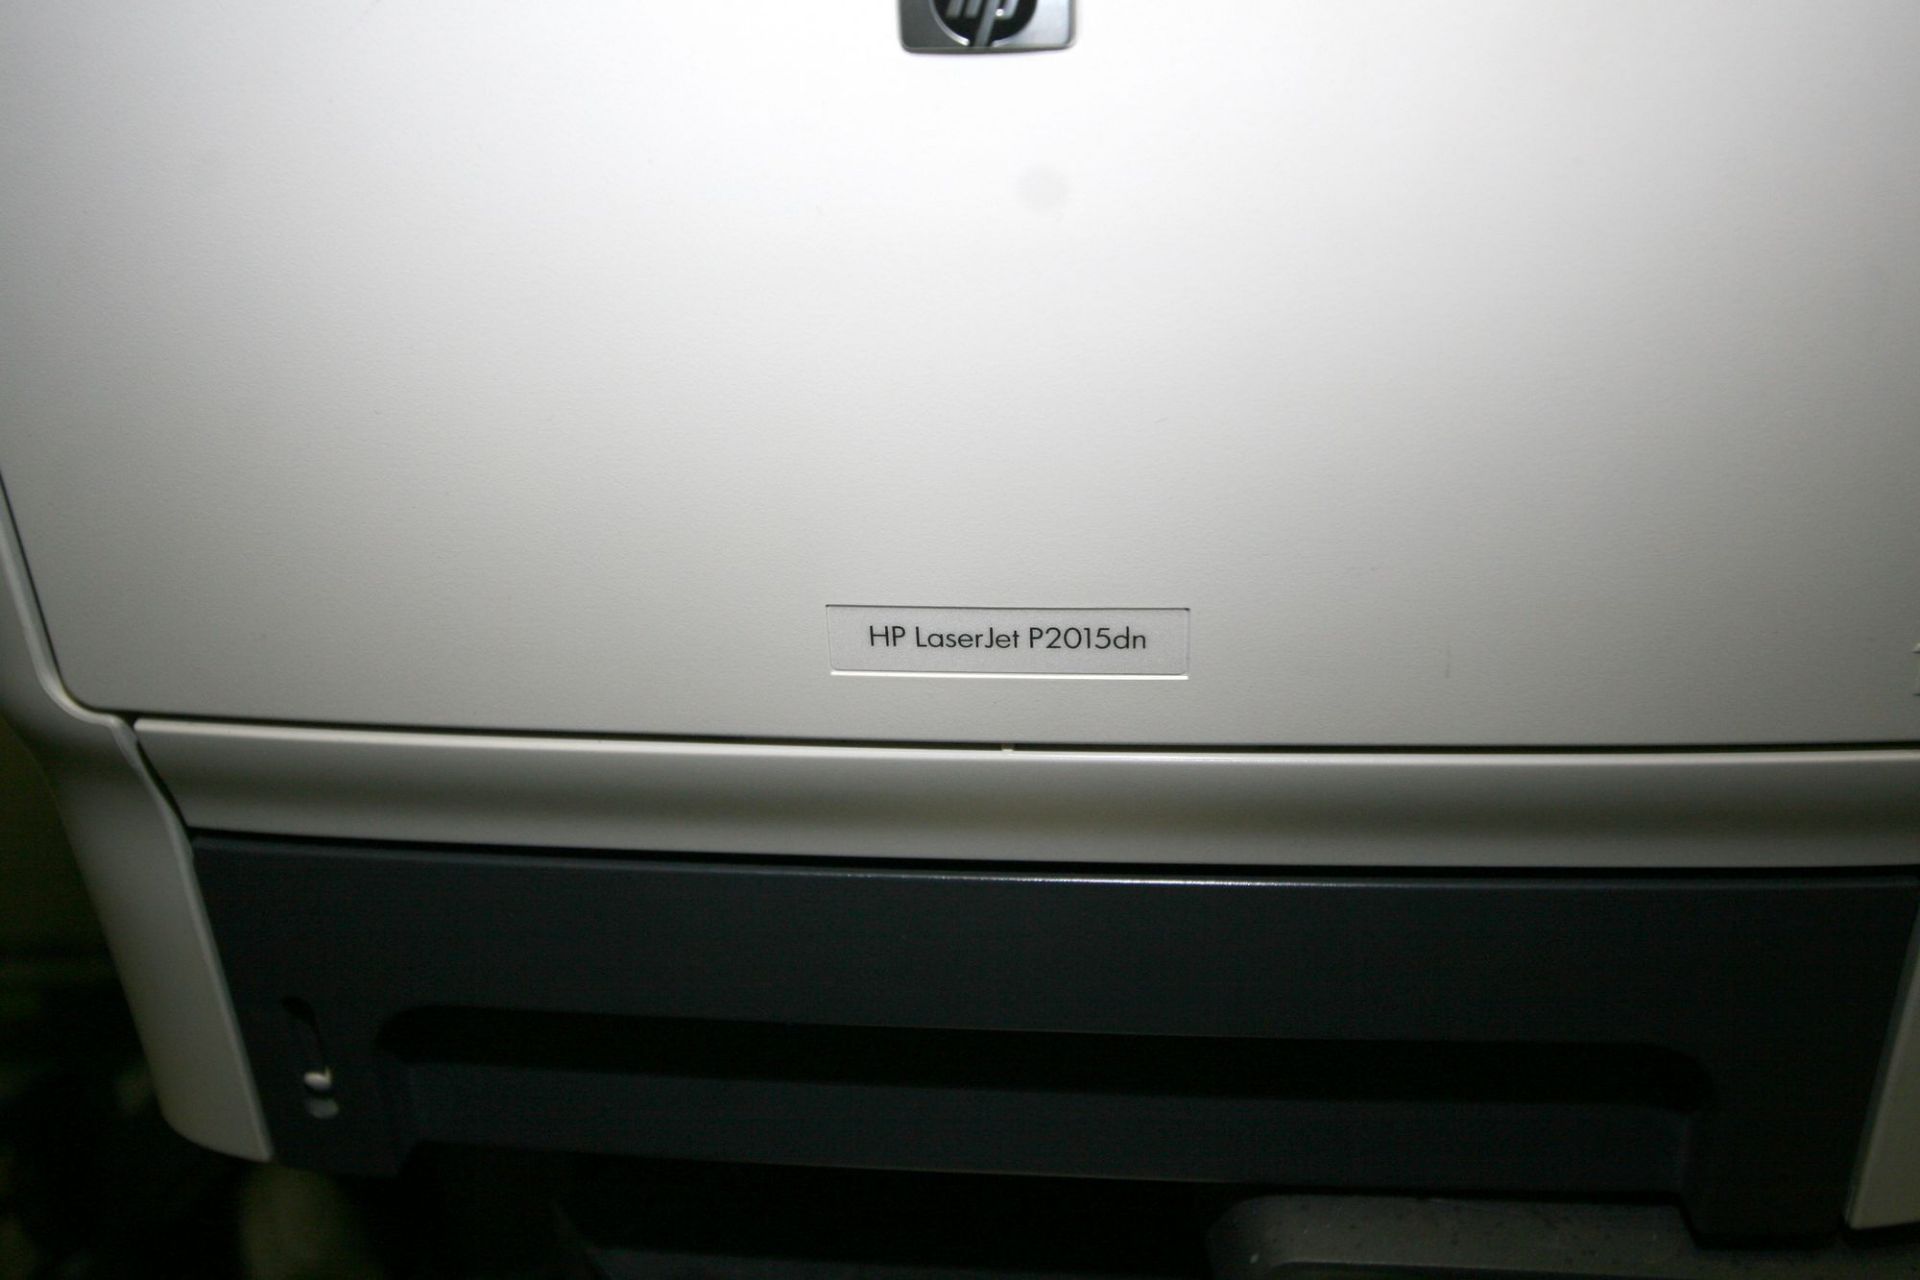 HP laserjet P2015dn printer - Image 2 of 3